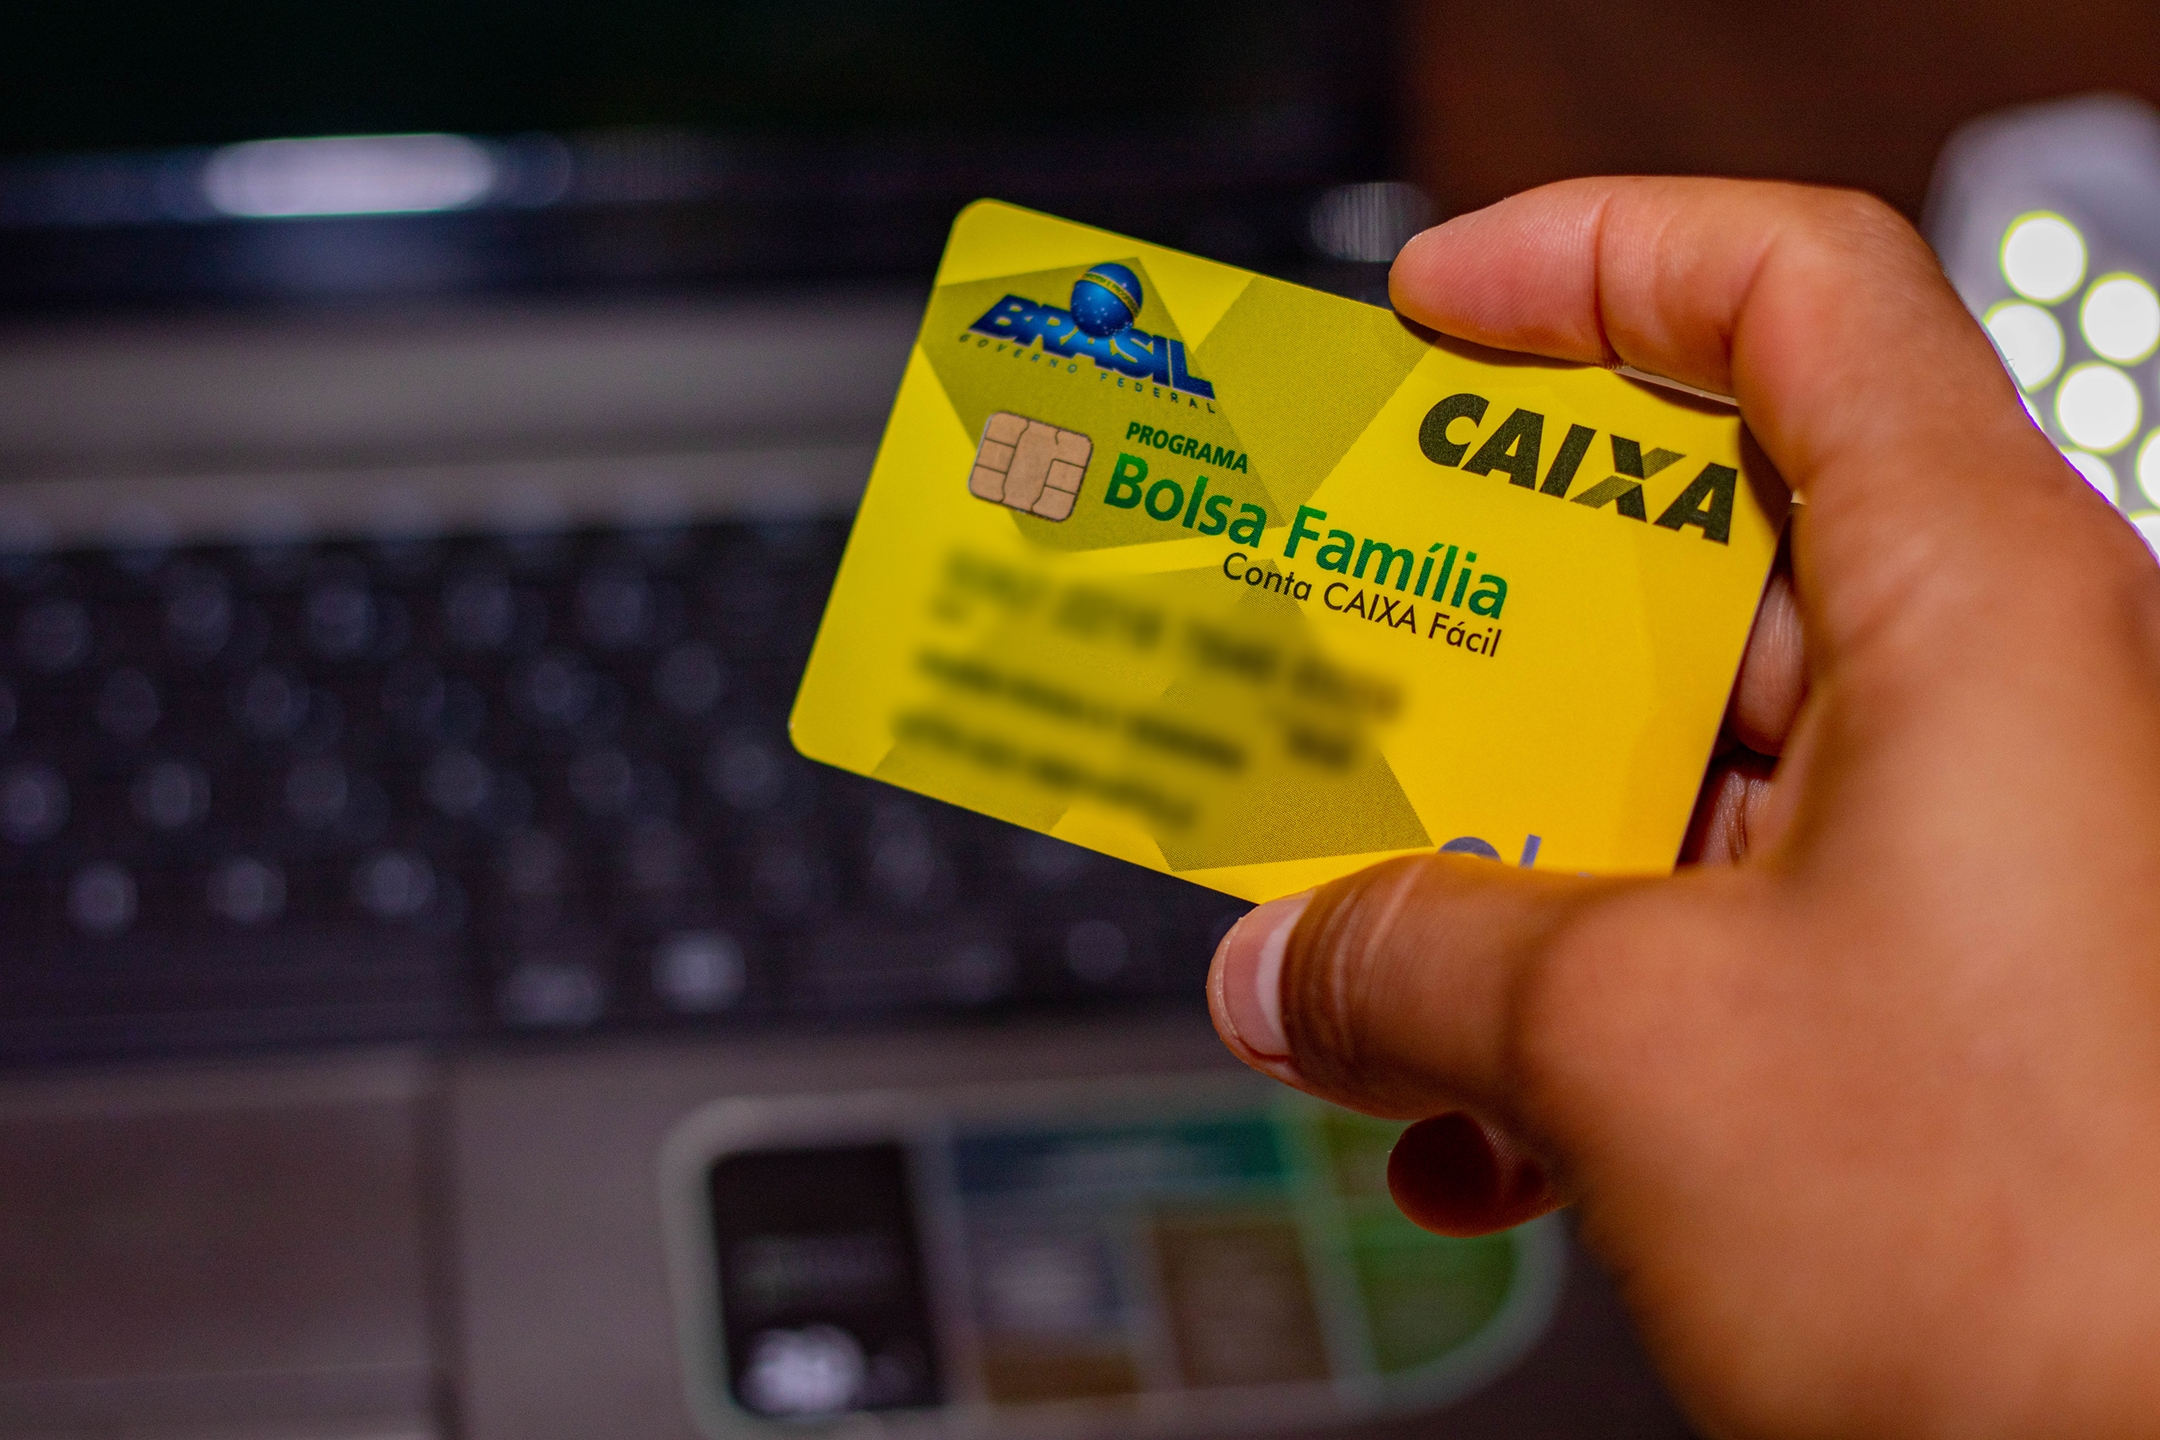  Pelajari cara membuka blokir kartu Bolsa Família Anda menggunakan ponsel Anda.